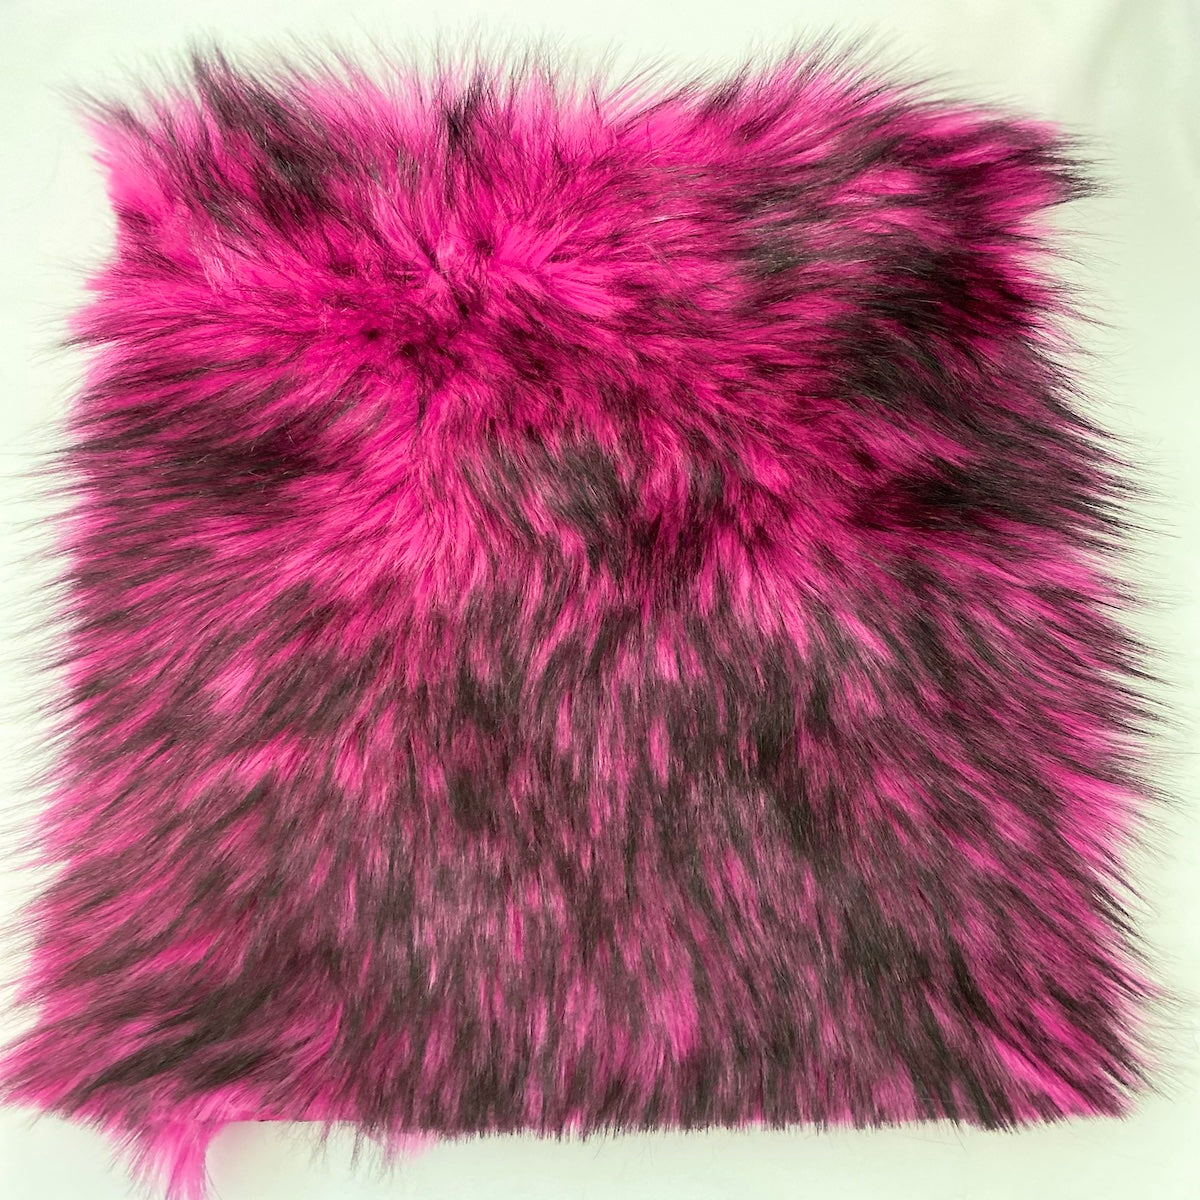 Violet Husky Long Pile Faux Fur Fabric